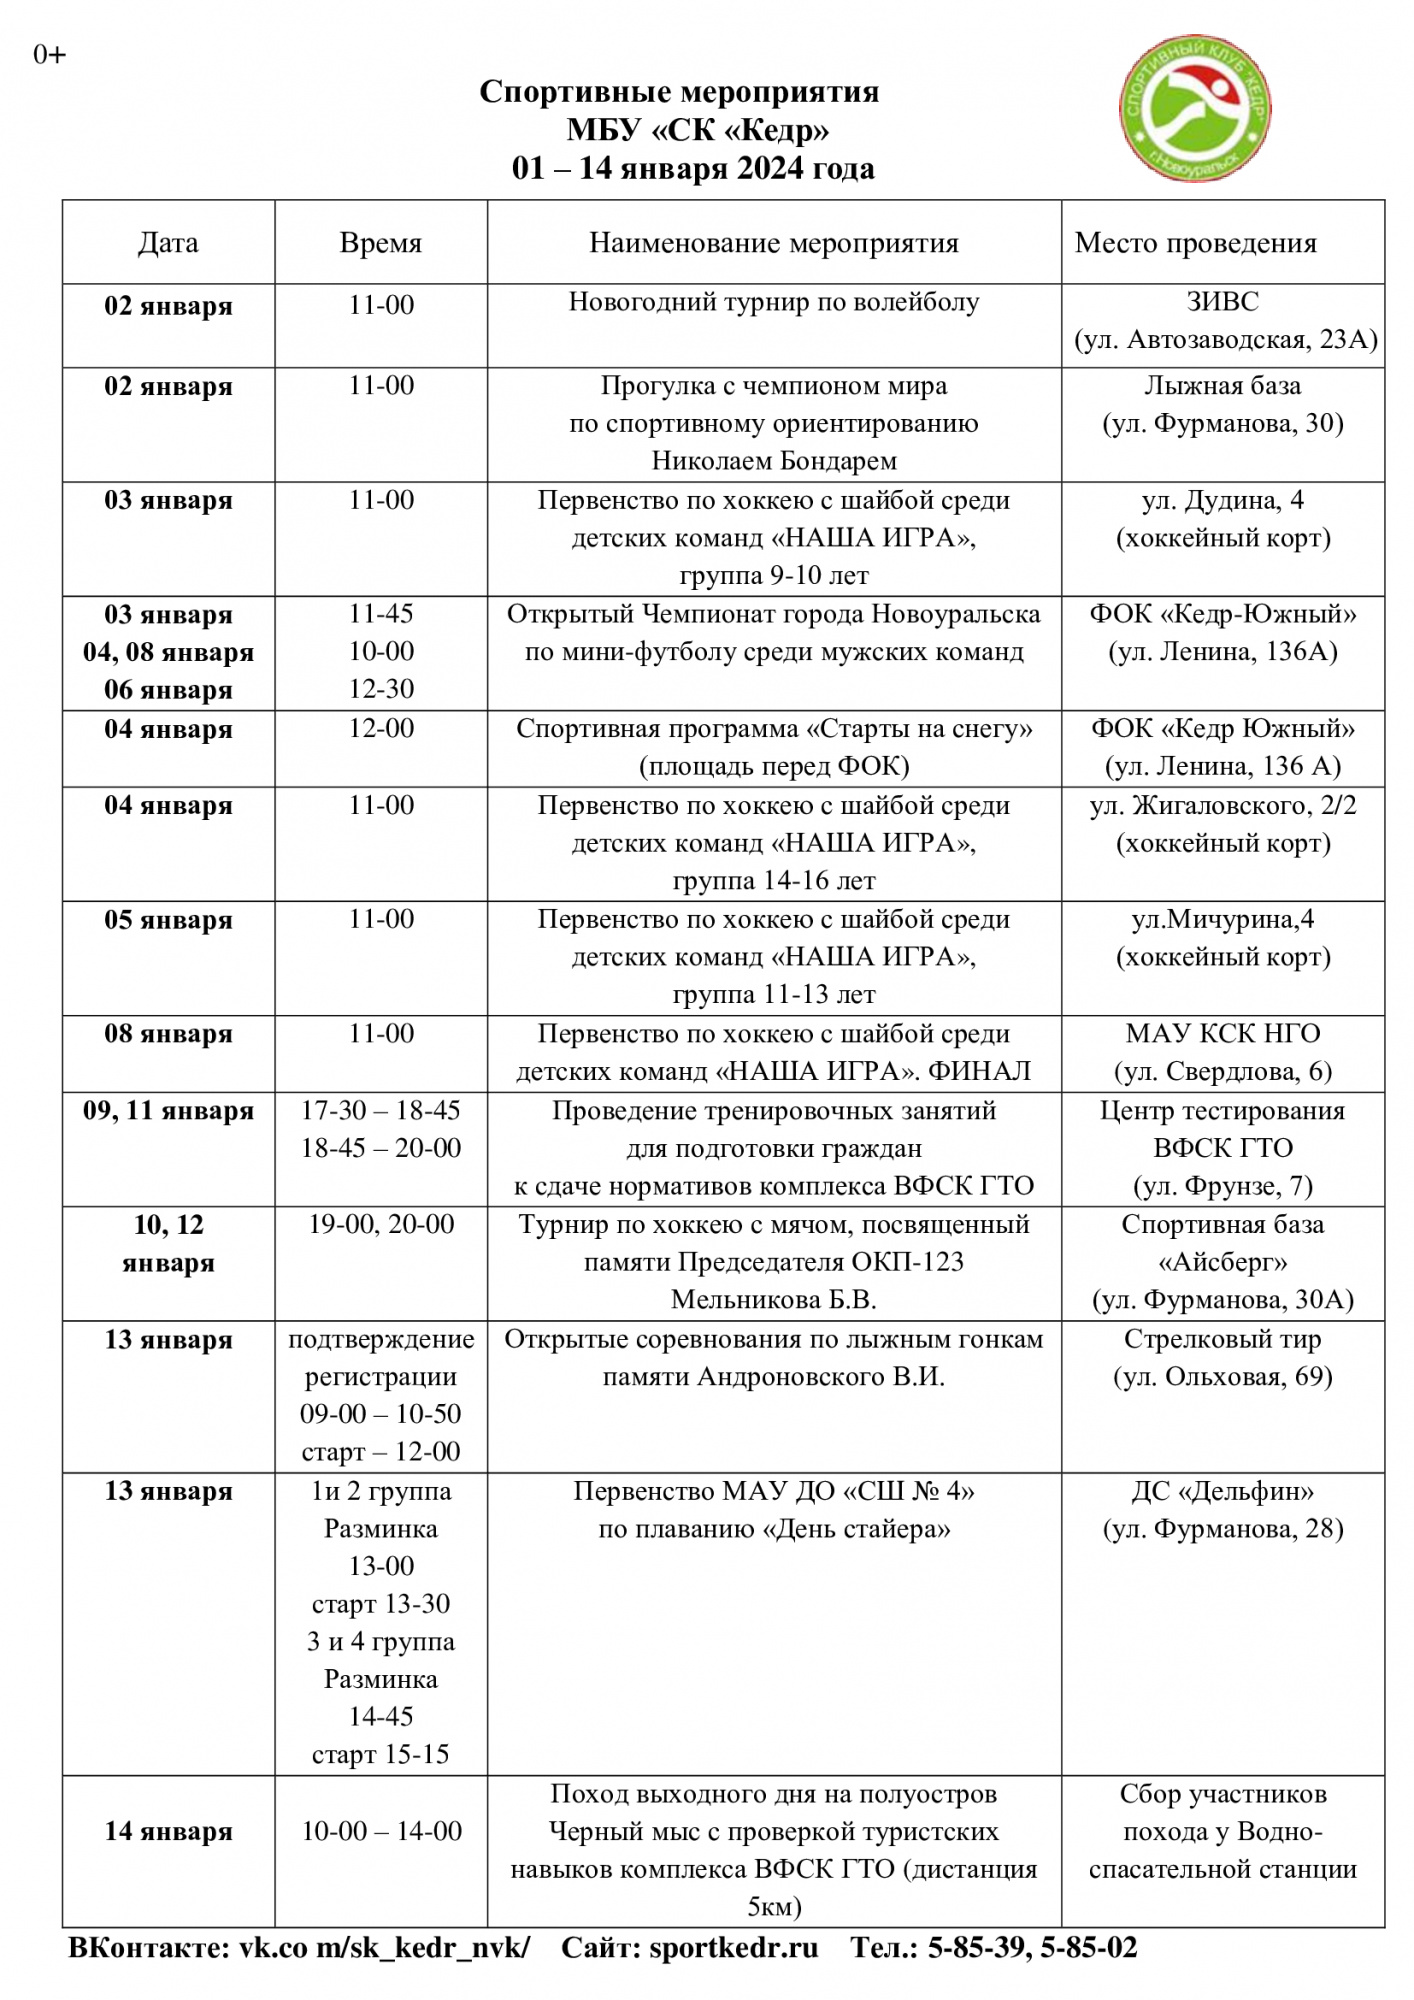 Спортивные мероприятия МБУ «СК «Кедр» 01 – 14 января 2024 года в Новоуральске